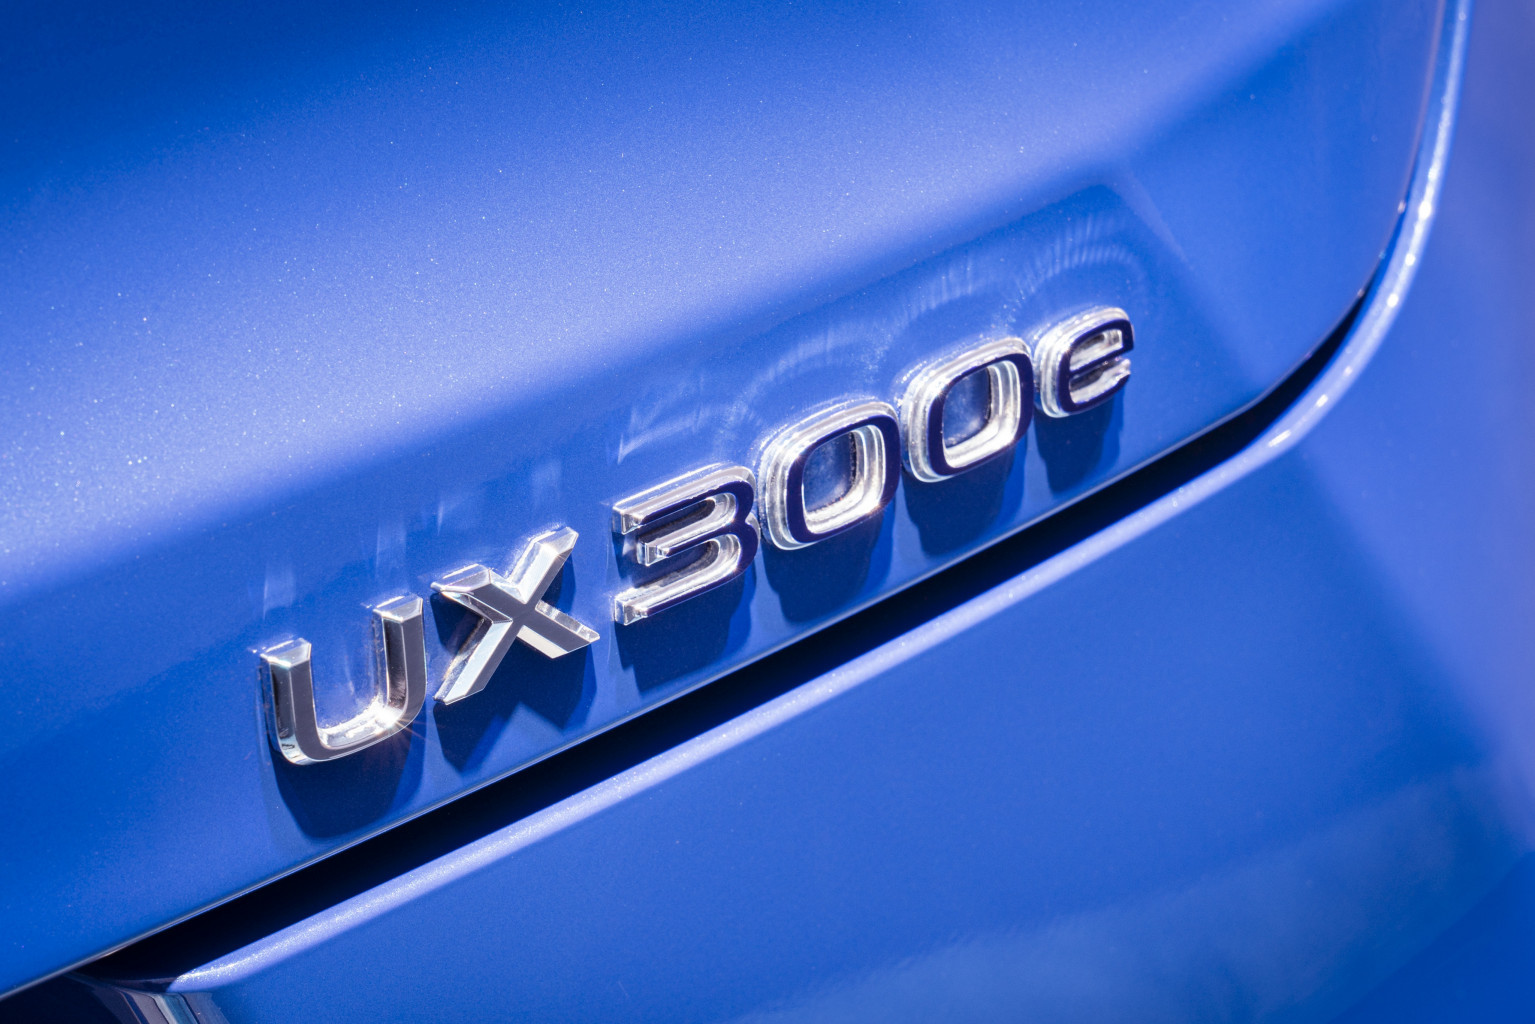 Lexus UX 300e